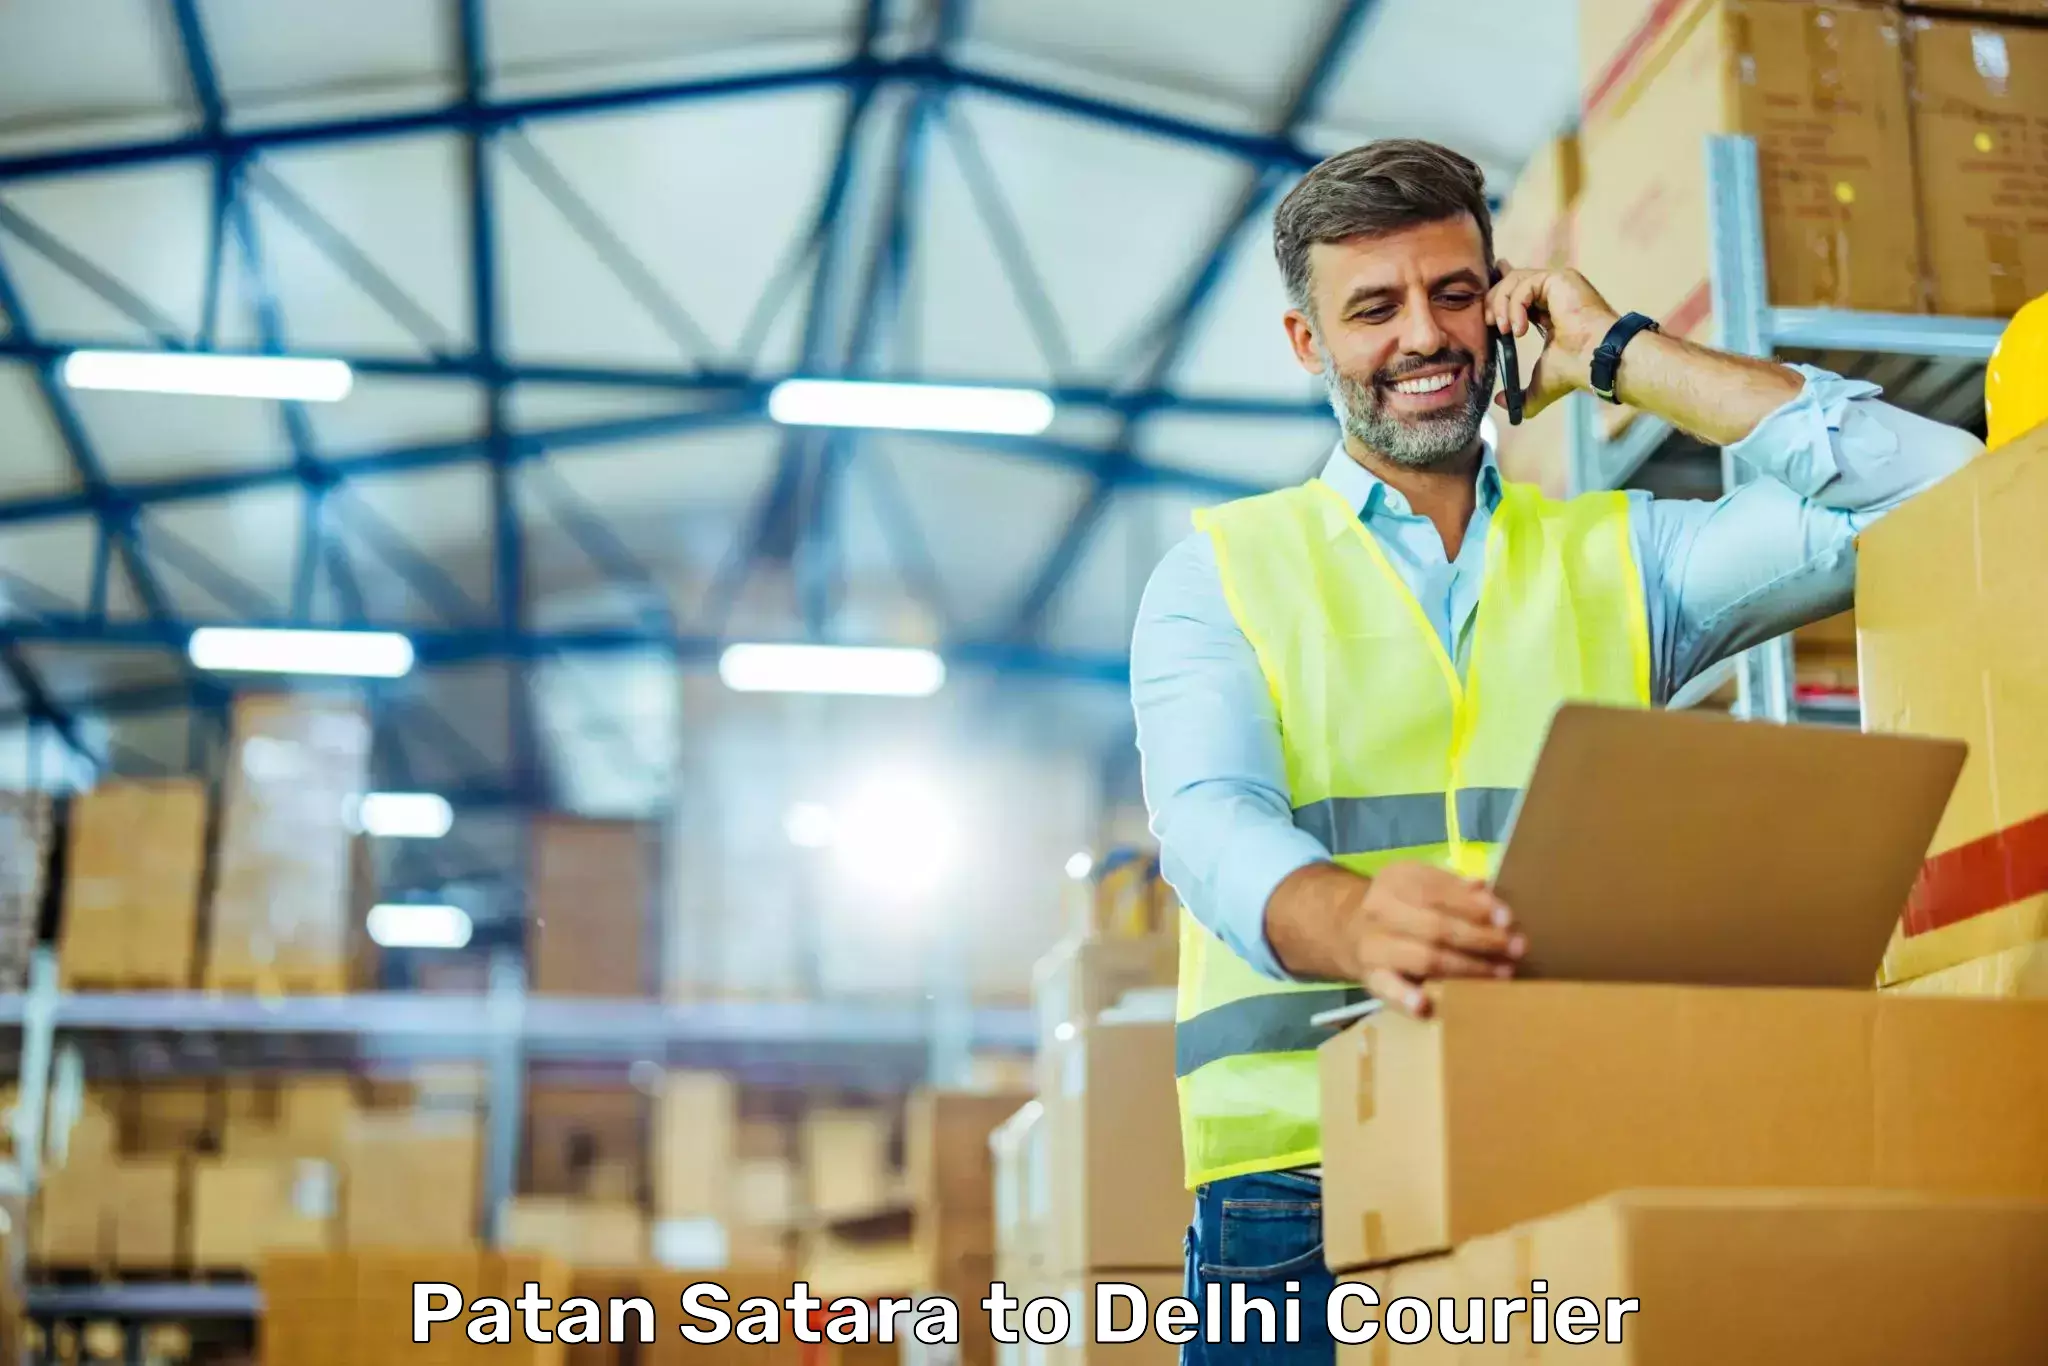 Cargo delivery service Patan Satara to Delhi